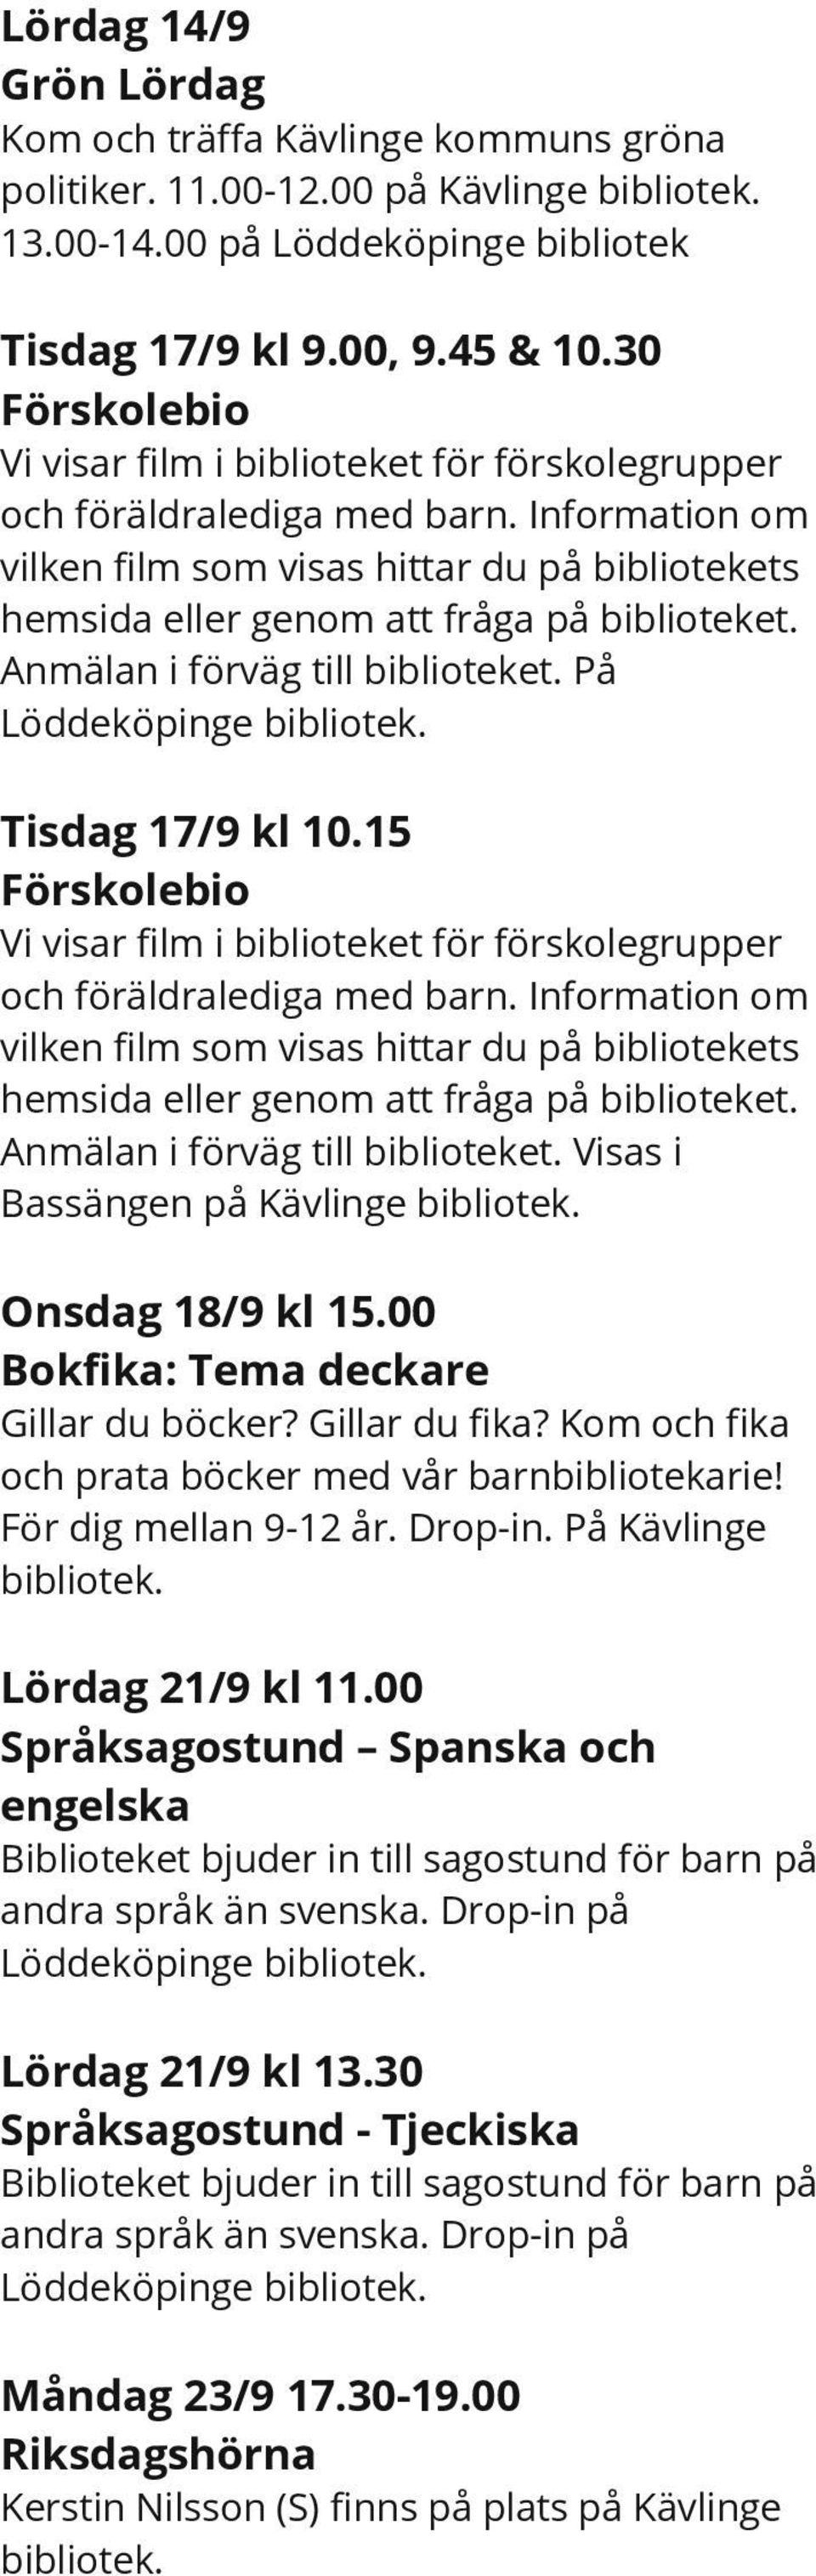 Anmälan i förväg till biblioteket. På Löddeköpinge Tisdag 17/9 kl 10.15 Förskolebio Vi visar film i biblioteket för förskolegrupper och föräldralediga med barn.